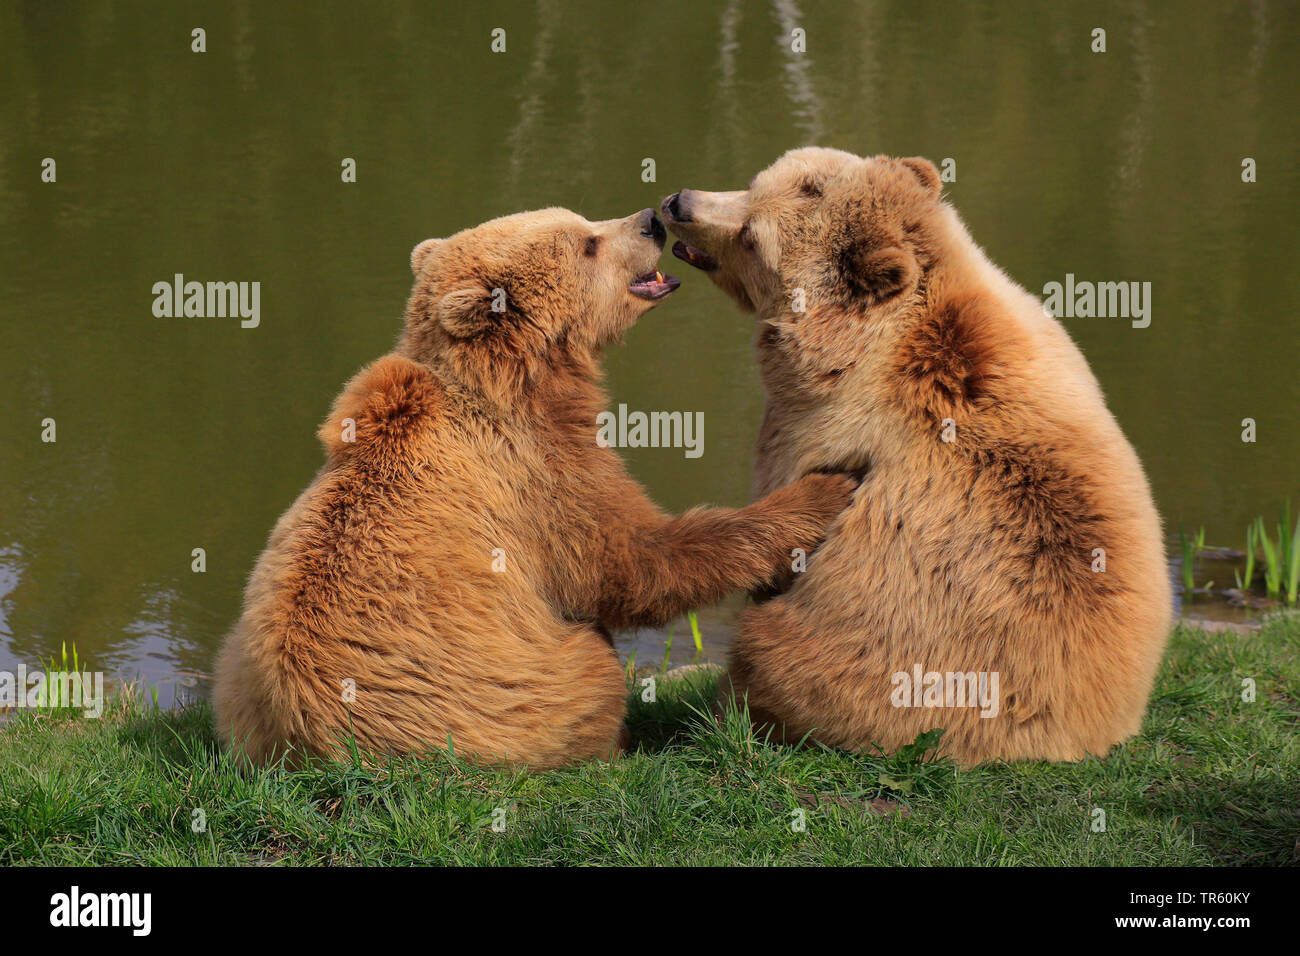 Europäische Braunbär (Ursus arctos arctos), zwei Bären in Liebe sitzen an einem See, Rückansicht, Deutschland Stockfoto